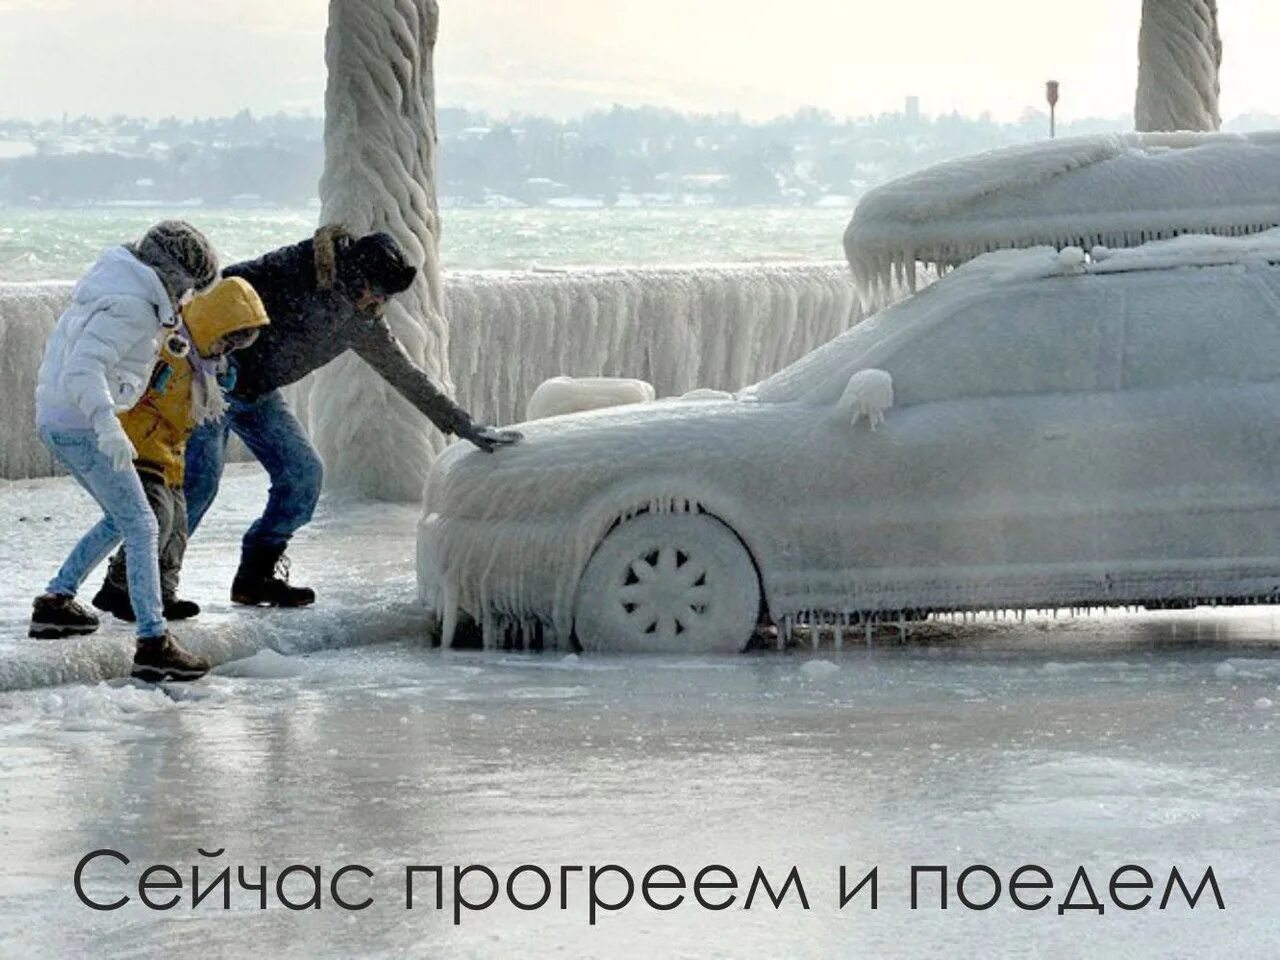 Слезаю с машины. Машина во льду. Замерзший автомобиль. Обледеневшая машина. Зимние автоприколы.